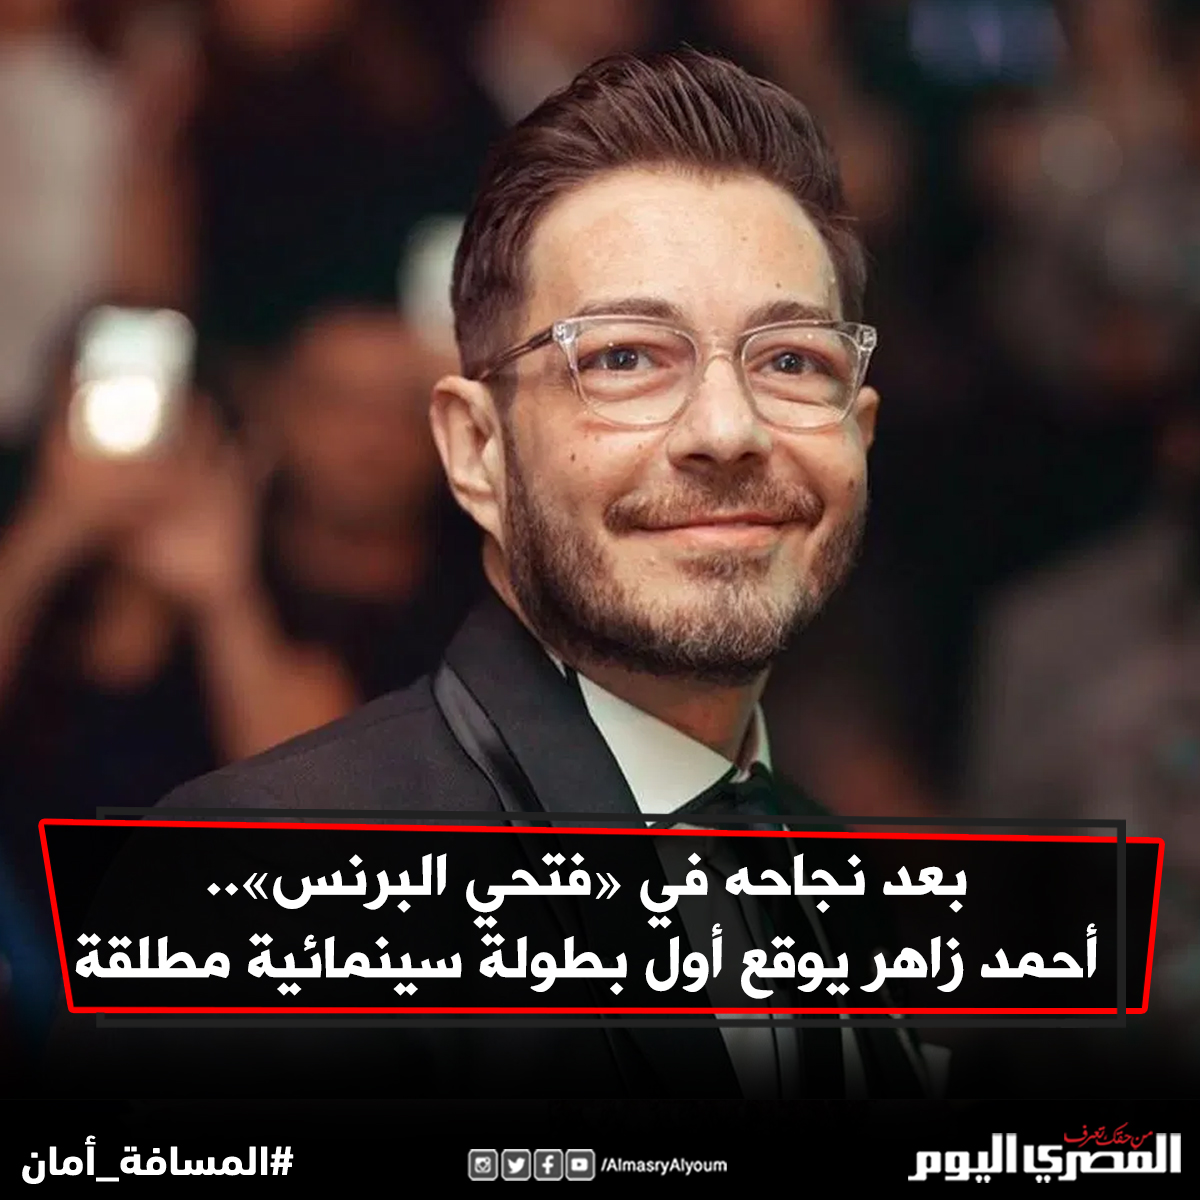 بعد نجاحه في «فتحي البرنس».. أحمد زاهر يوقع أول بطولة سينمائية مطلقة